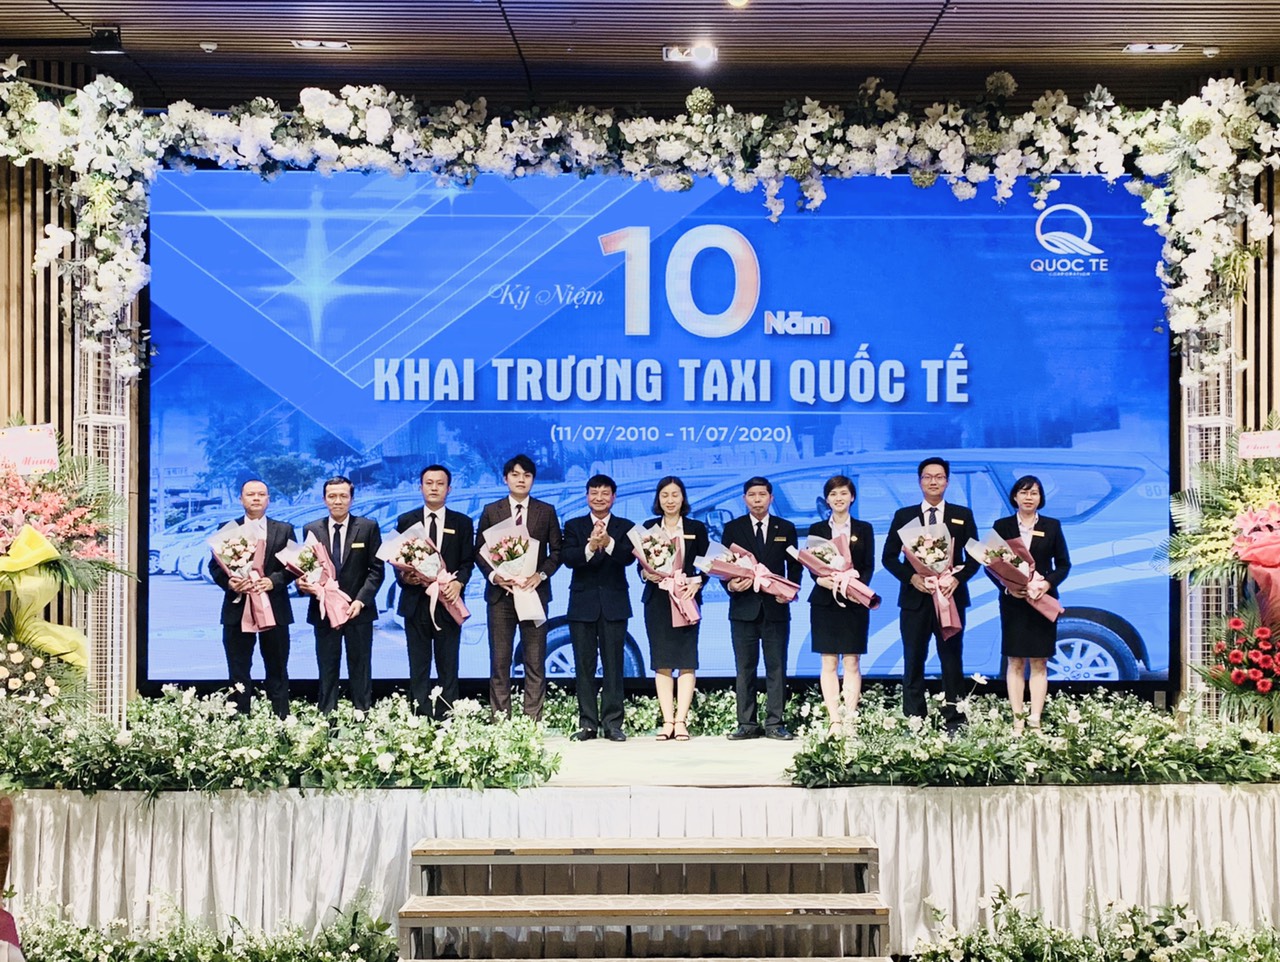  Ông Nguyễn Xuân Thùy - Chủ tịch Tổng Công ty Cổ phần Thương mại và Dịch vụ Quốc Tế tặng hoa cho lãnh đạo Taxi Quốc Tế